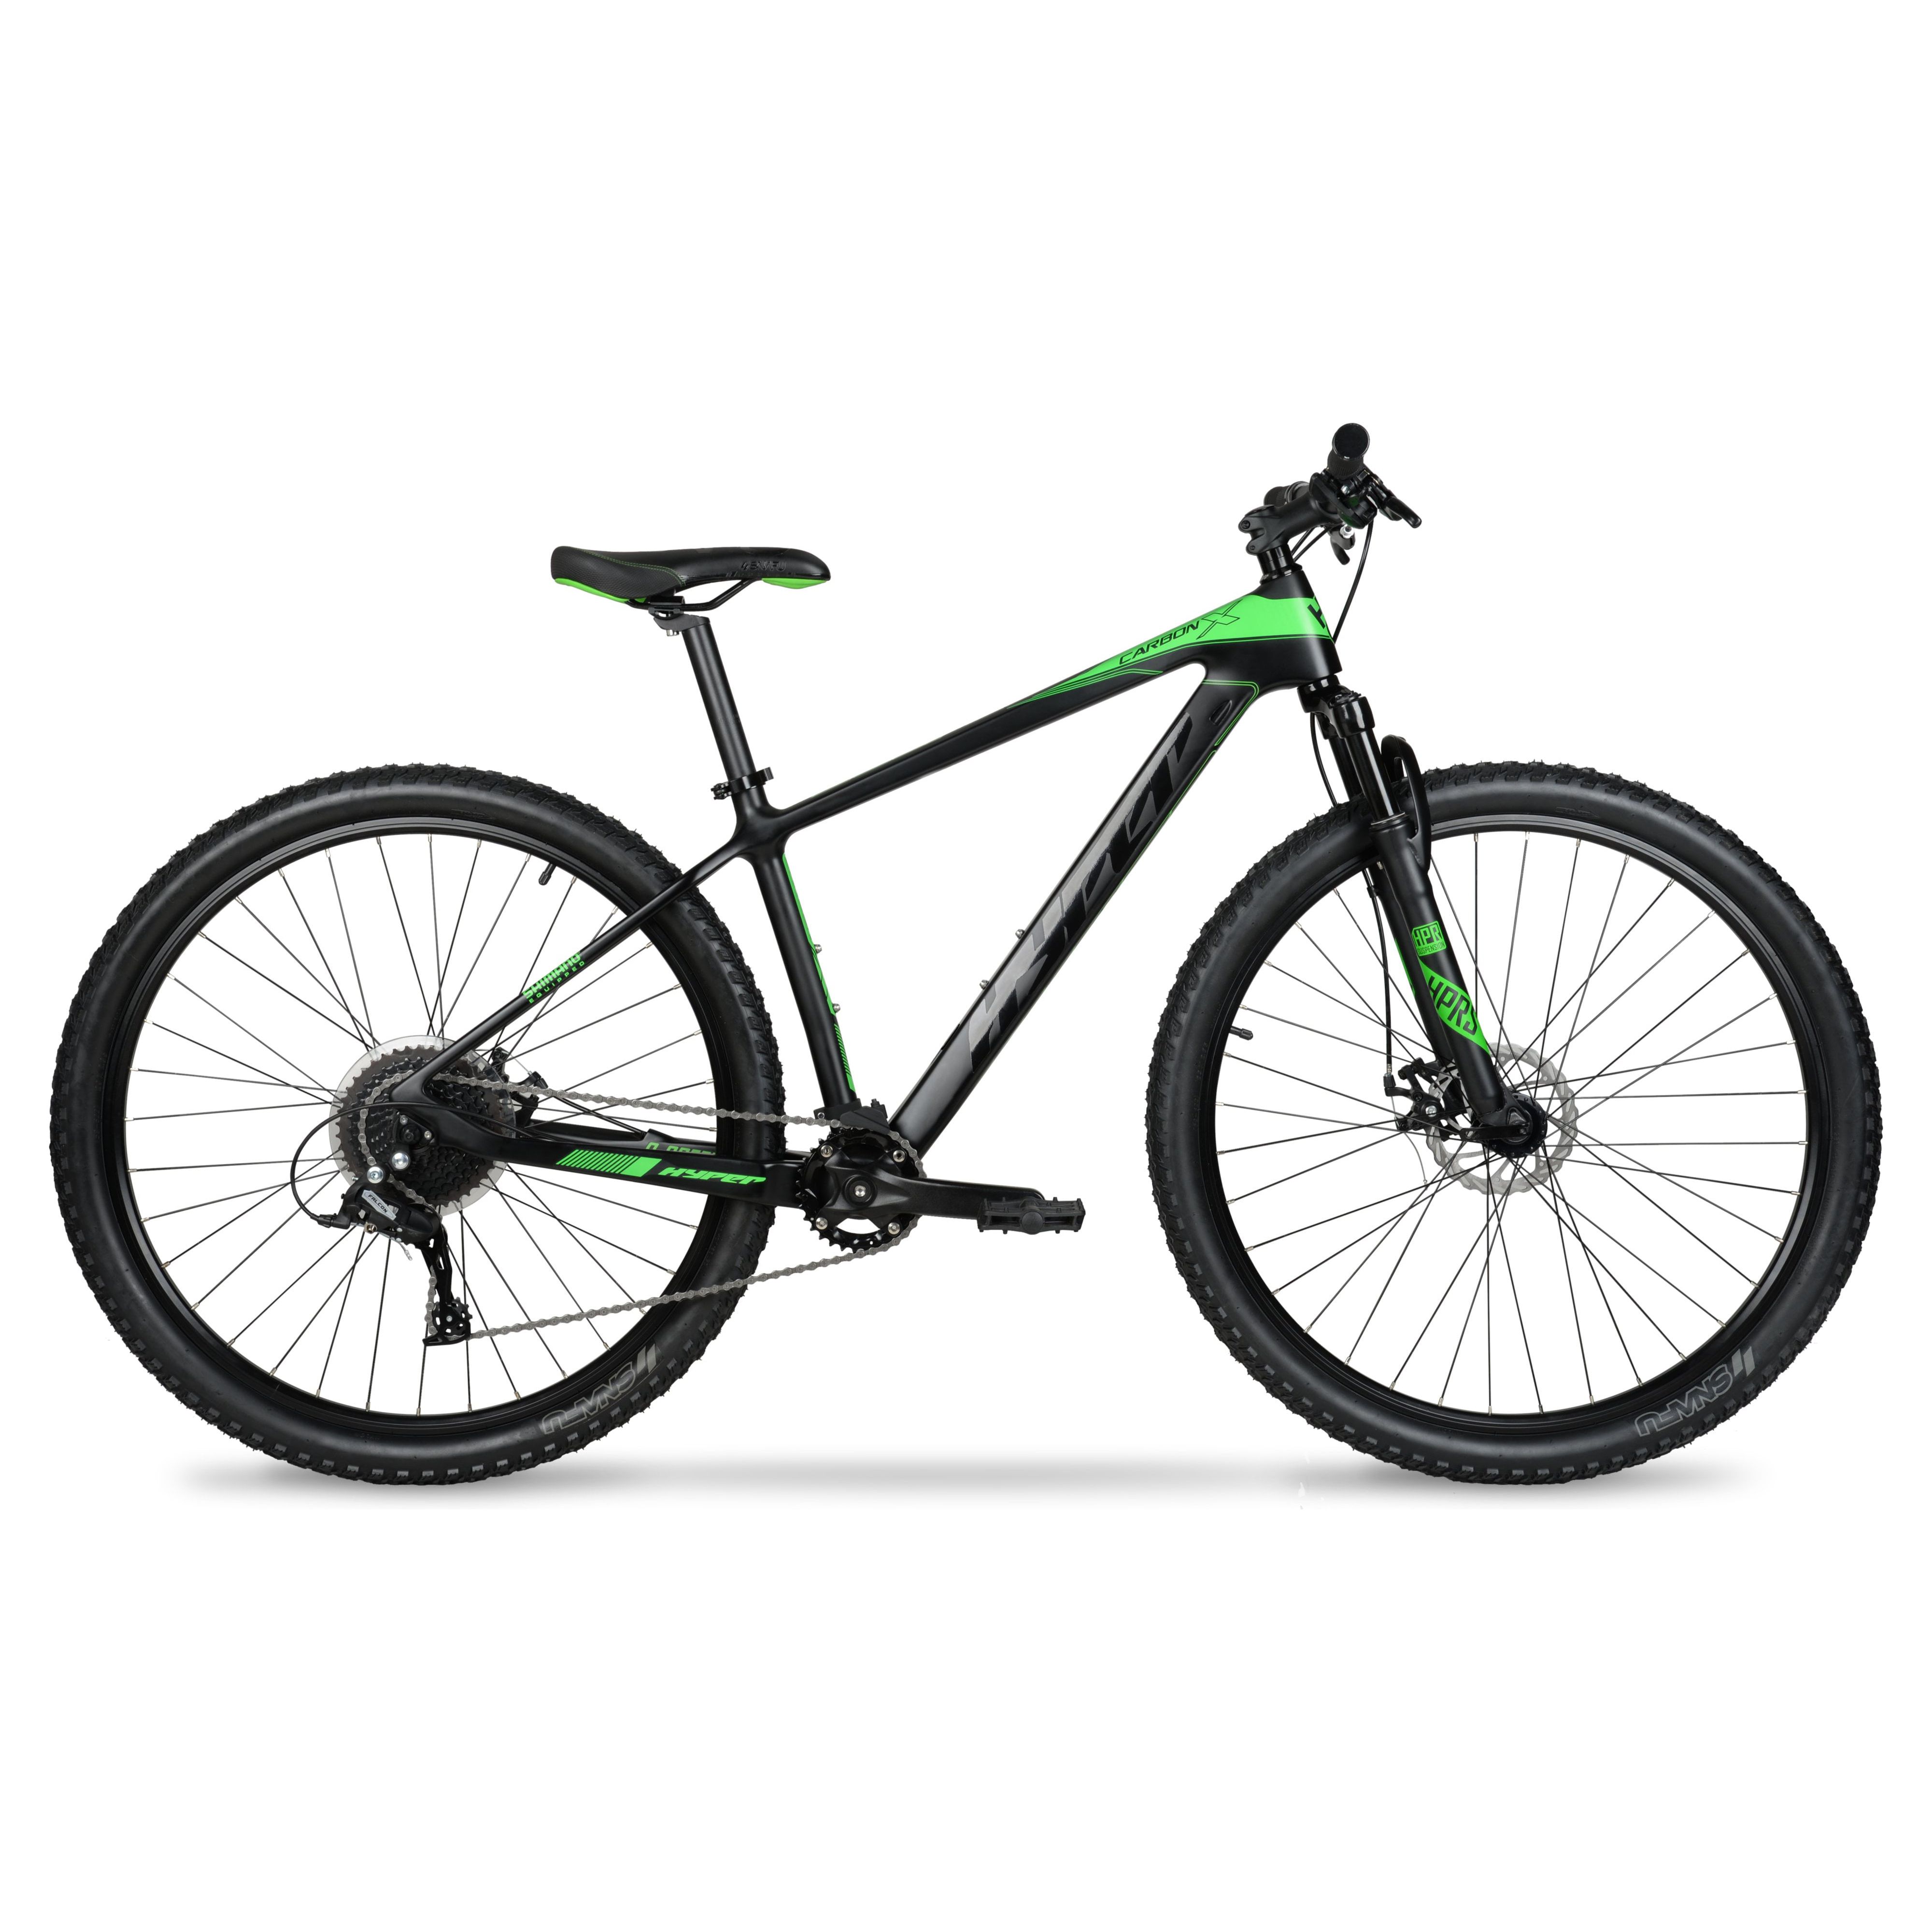 Hyper 29" Carbon Fiber Men's Mountain Bike, Black/Green - image 12 of 12